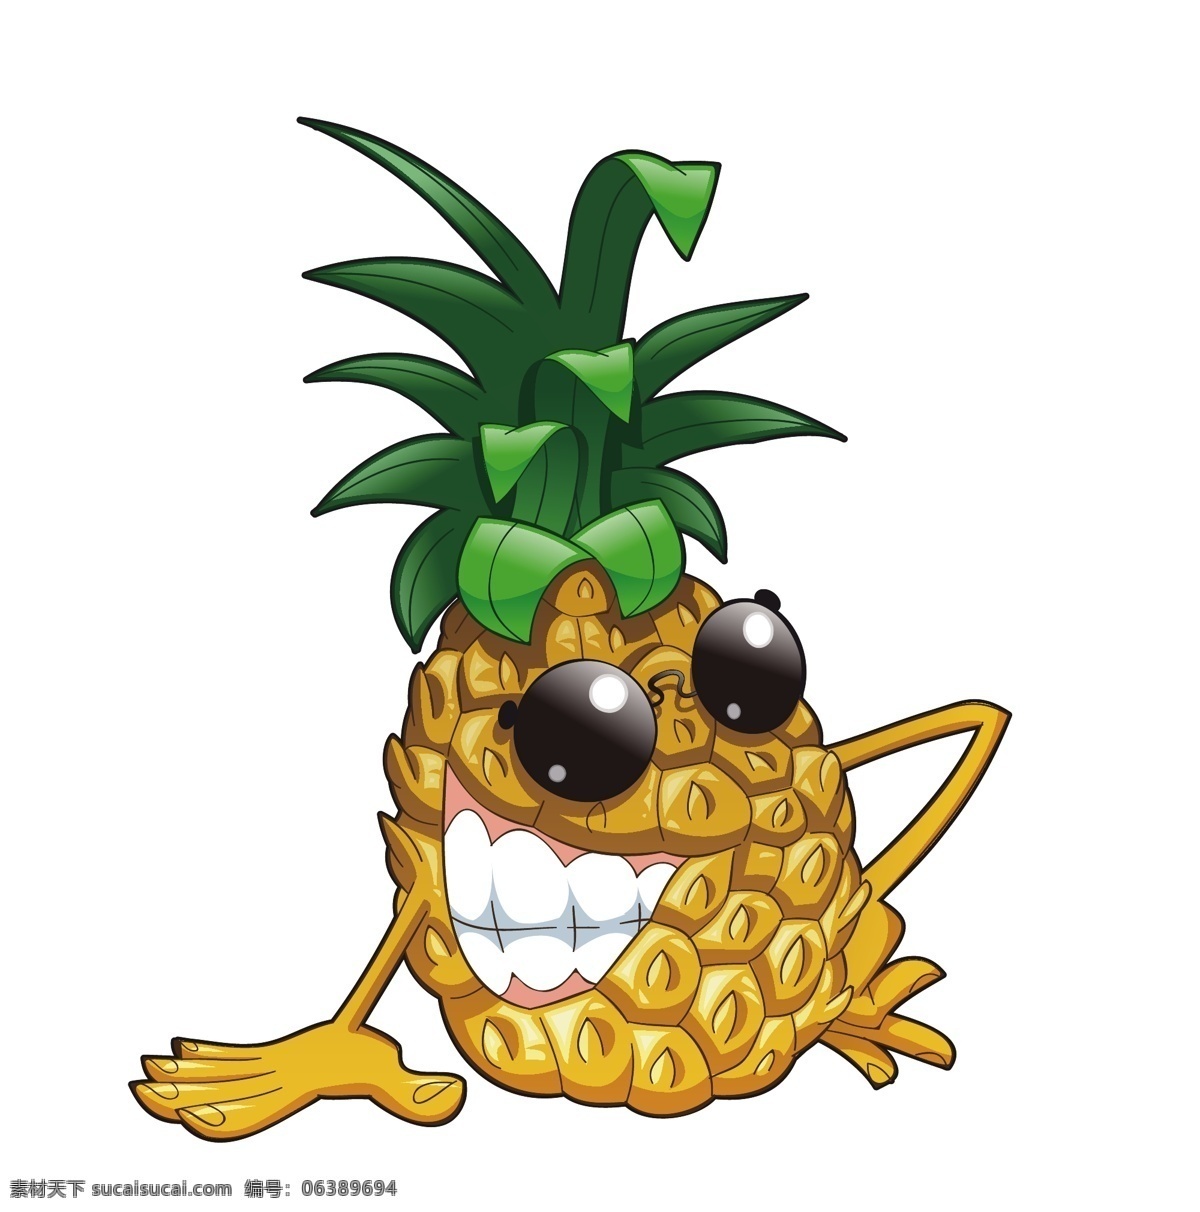 矢量 水果 菠萝 卡通 素材图片 卡通水果 可爱水果 矢量水果